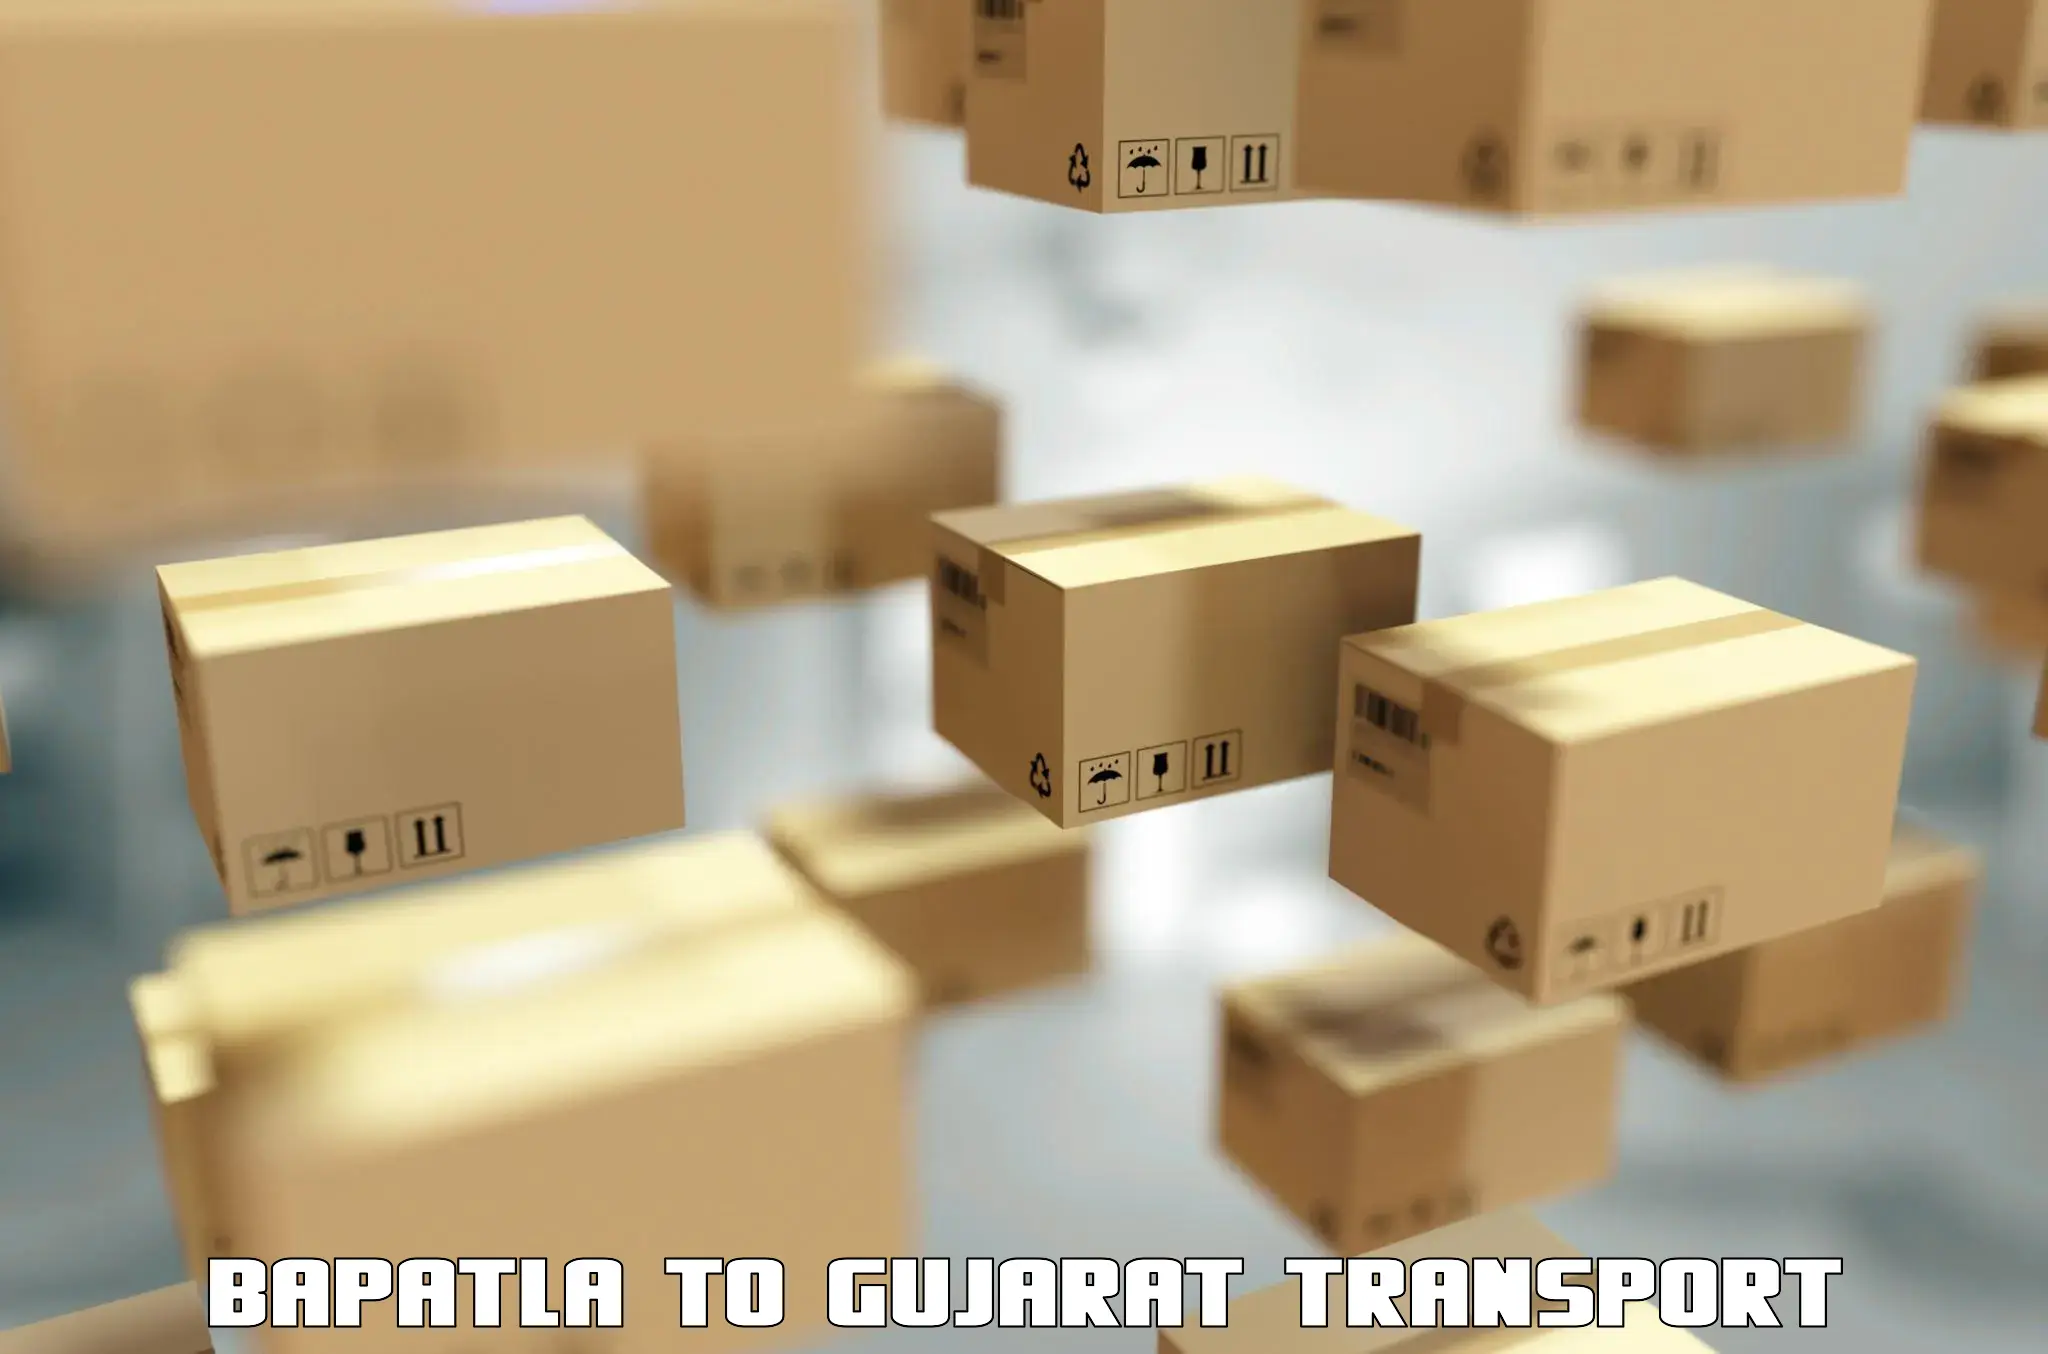 Transport in sharing Bapatla to Godhra